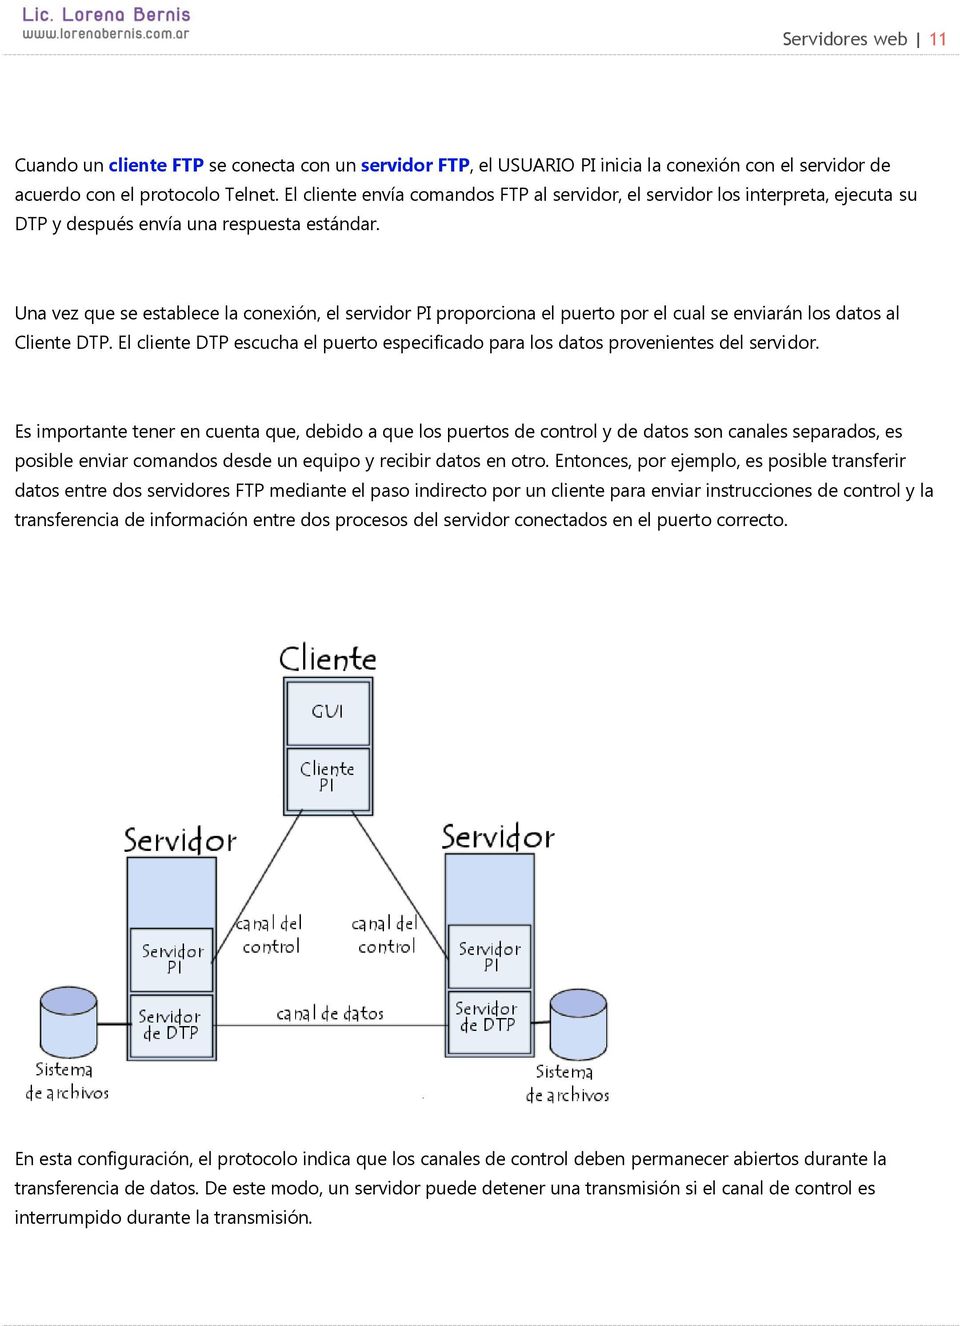 Una vez que se establece la conexión, el servidor PI proporciona el puerto por el cual se enviarán los datos al Cliente DTP.